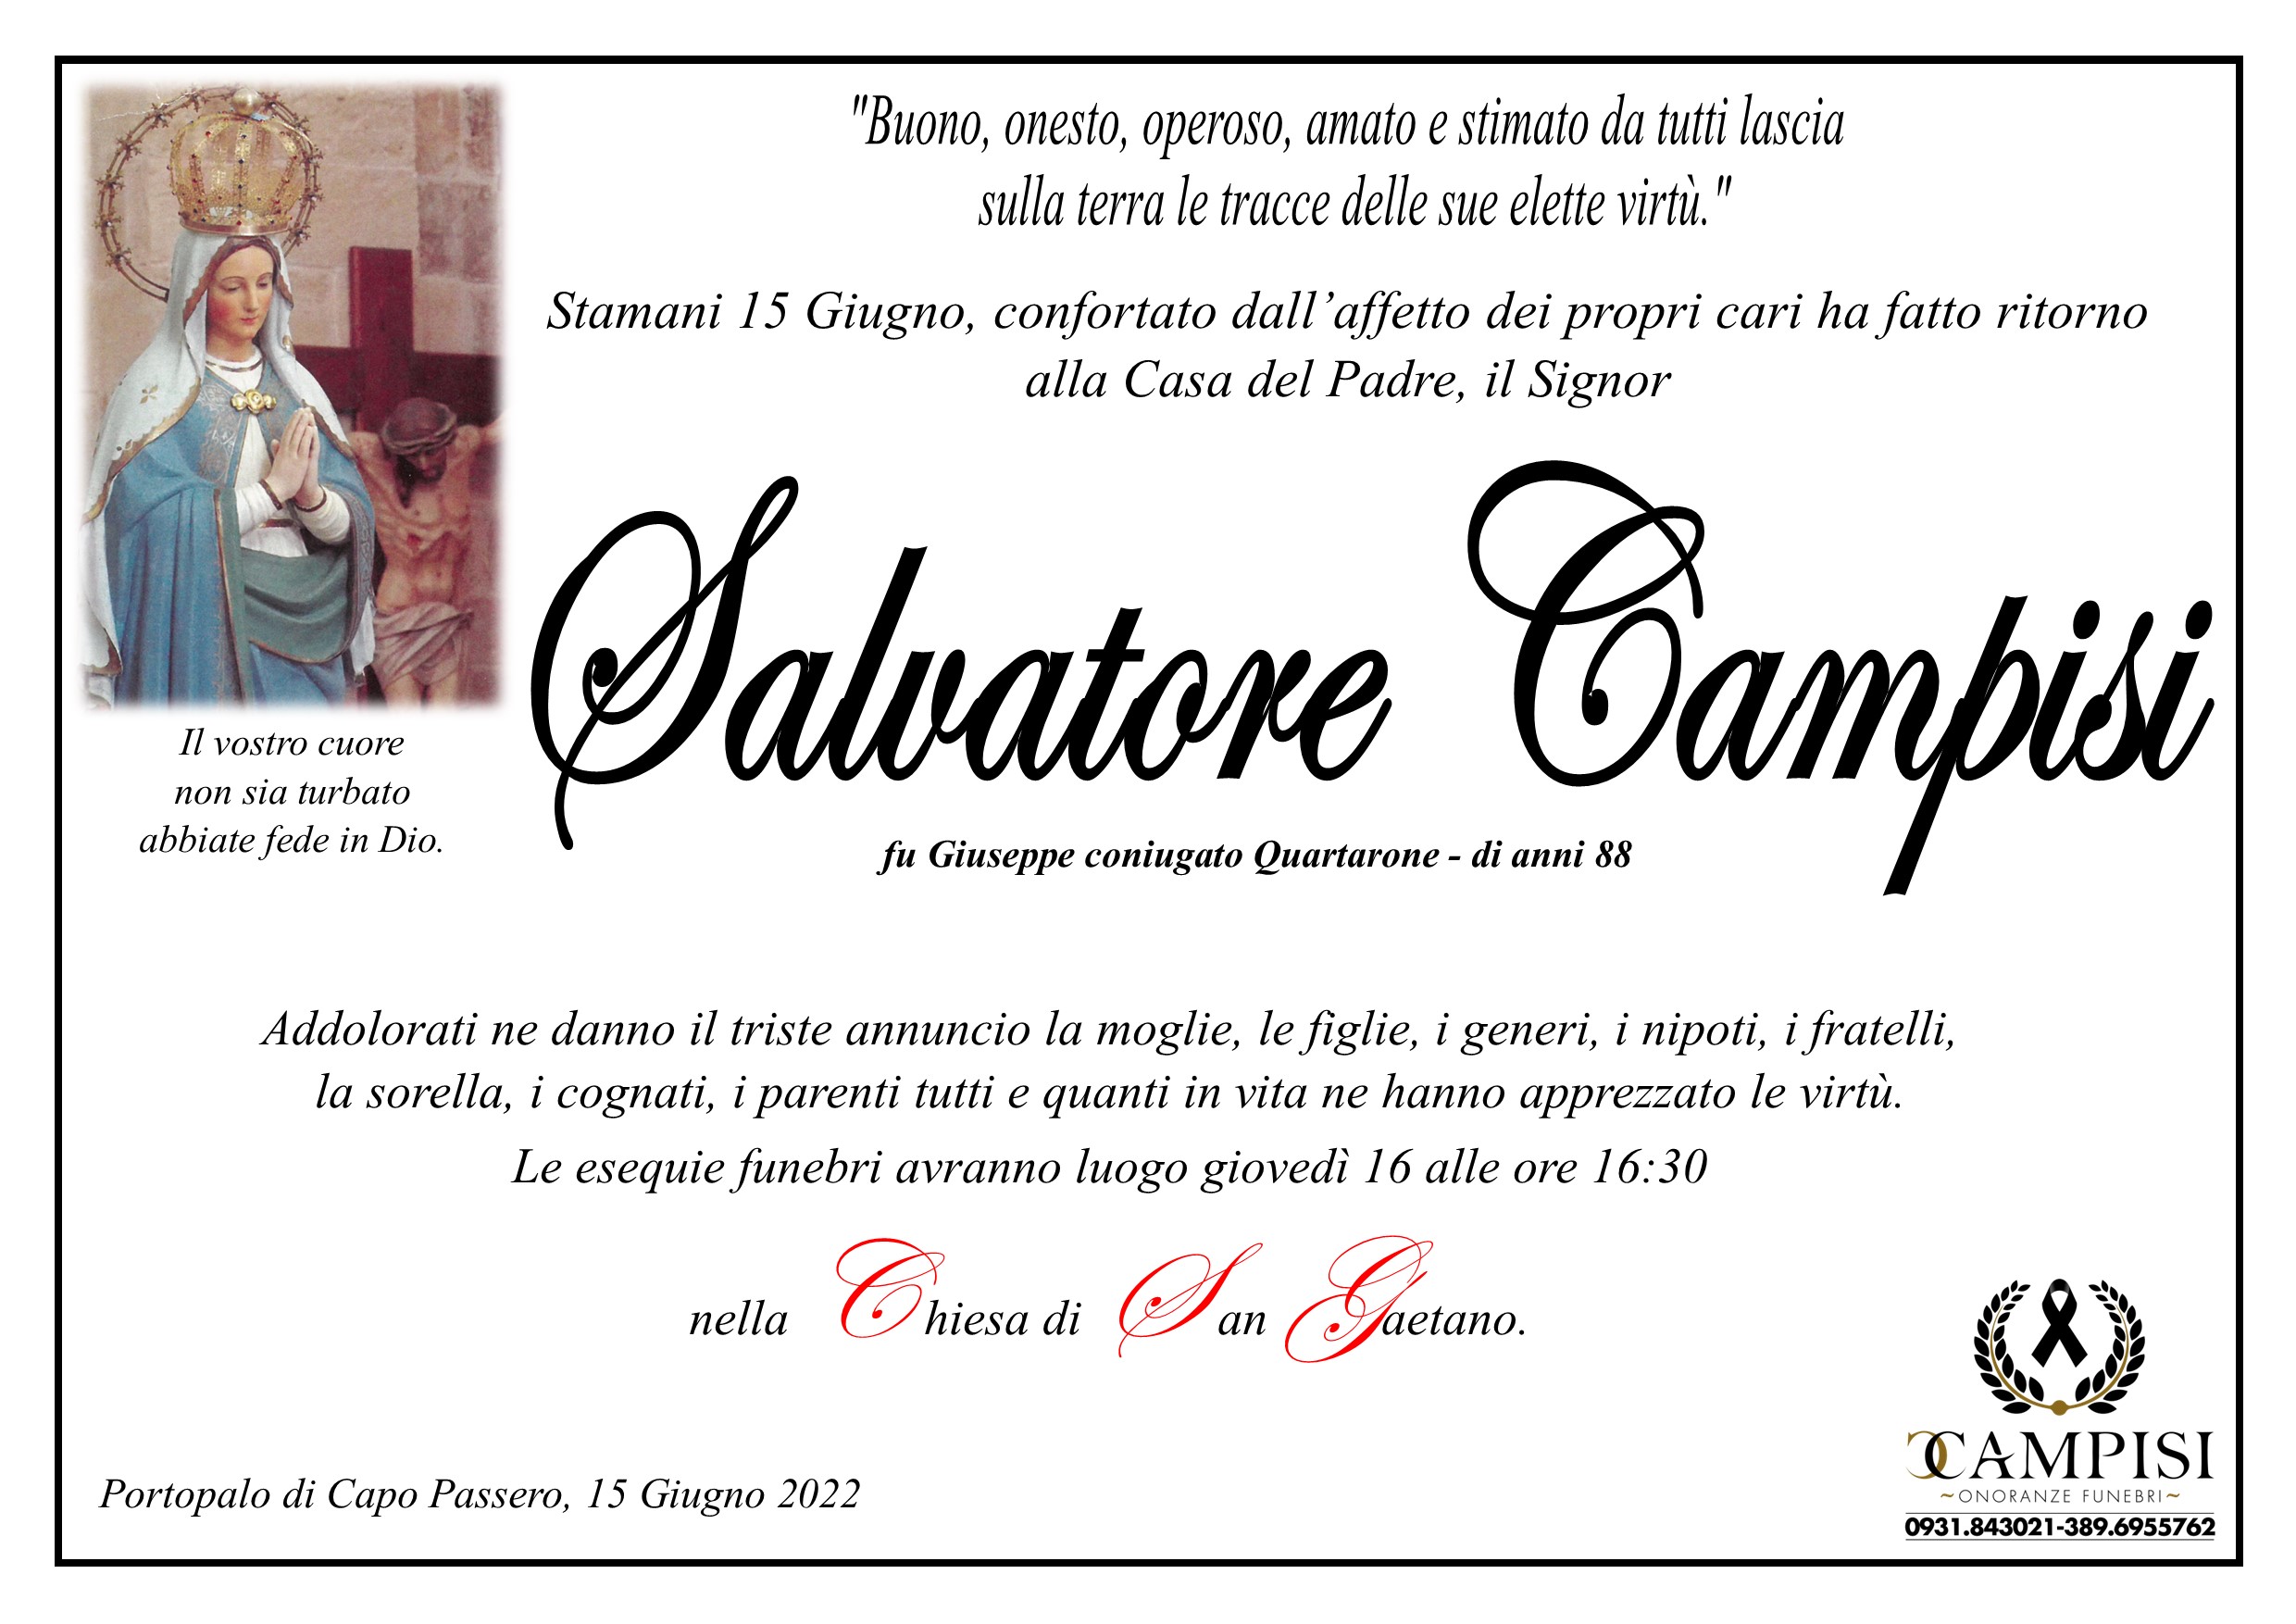 Salvatore Campisi